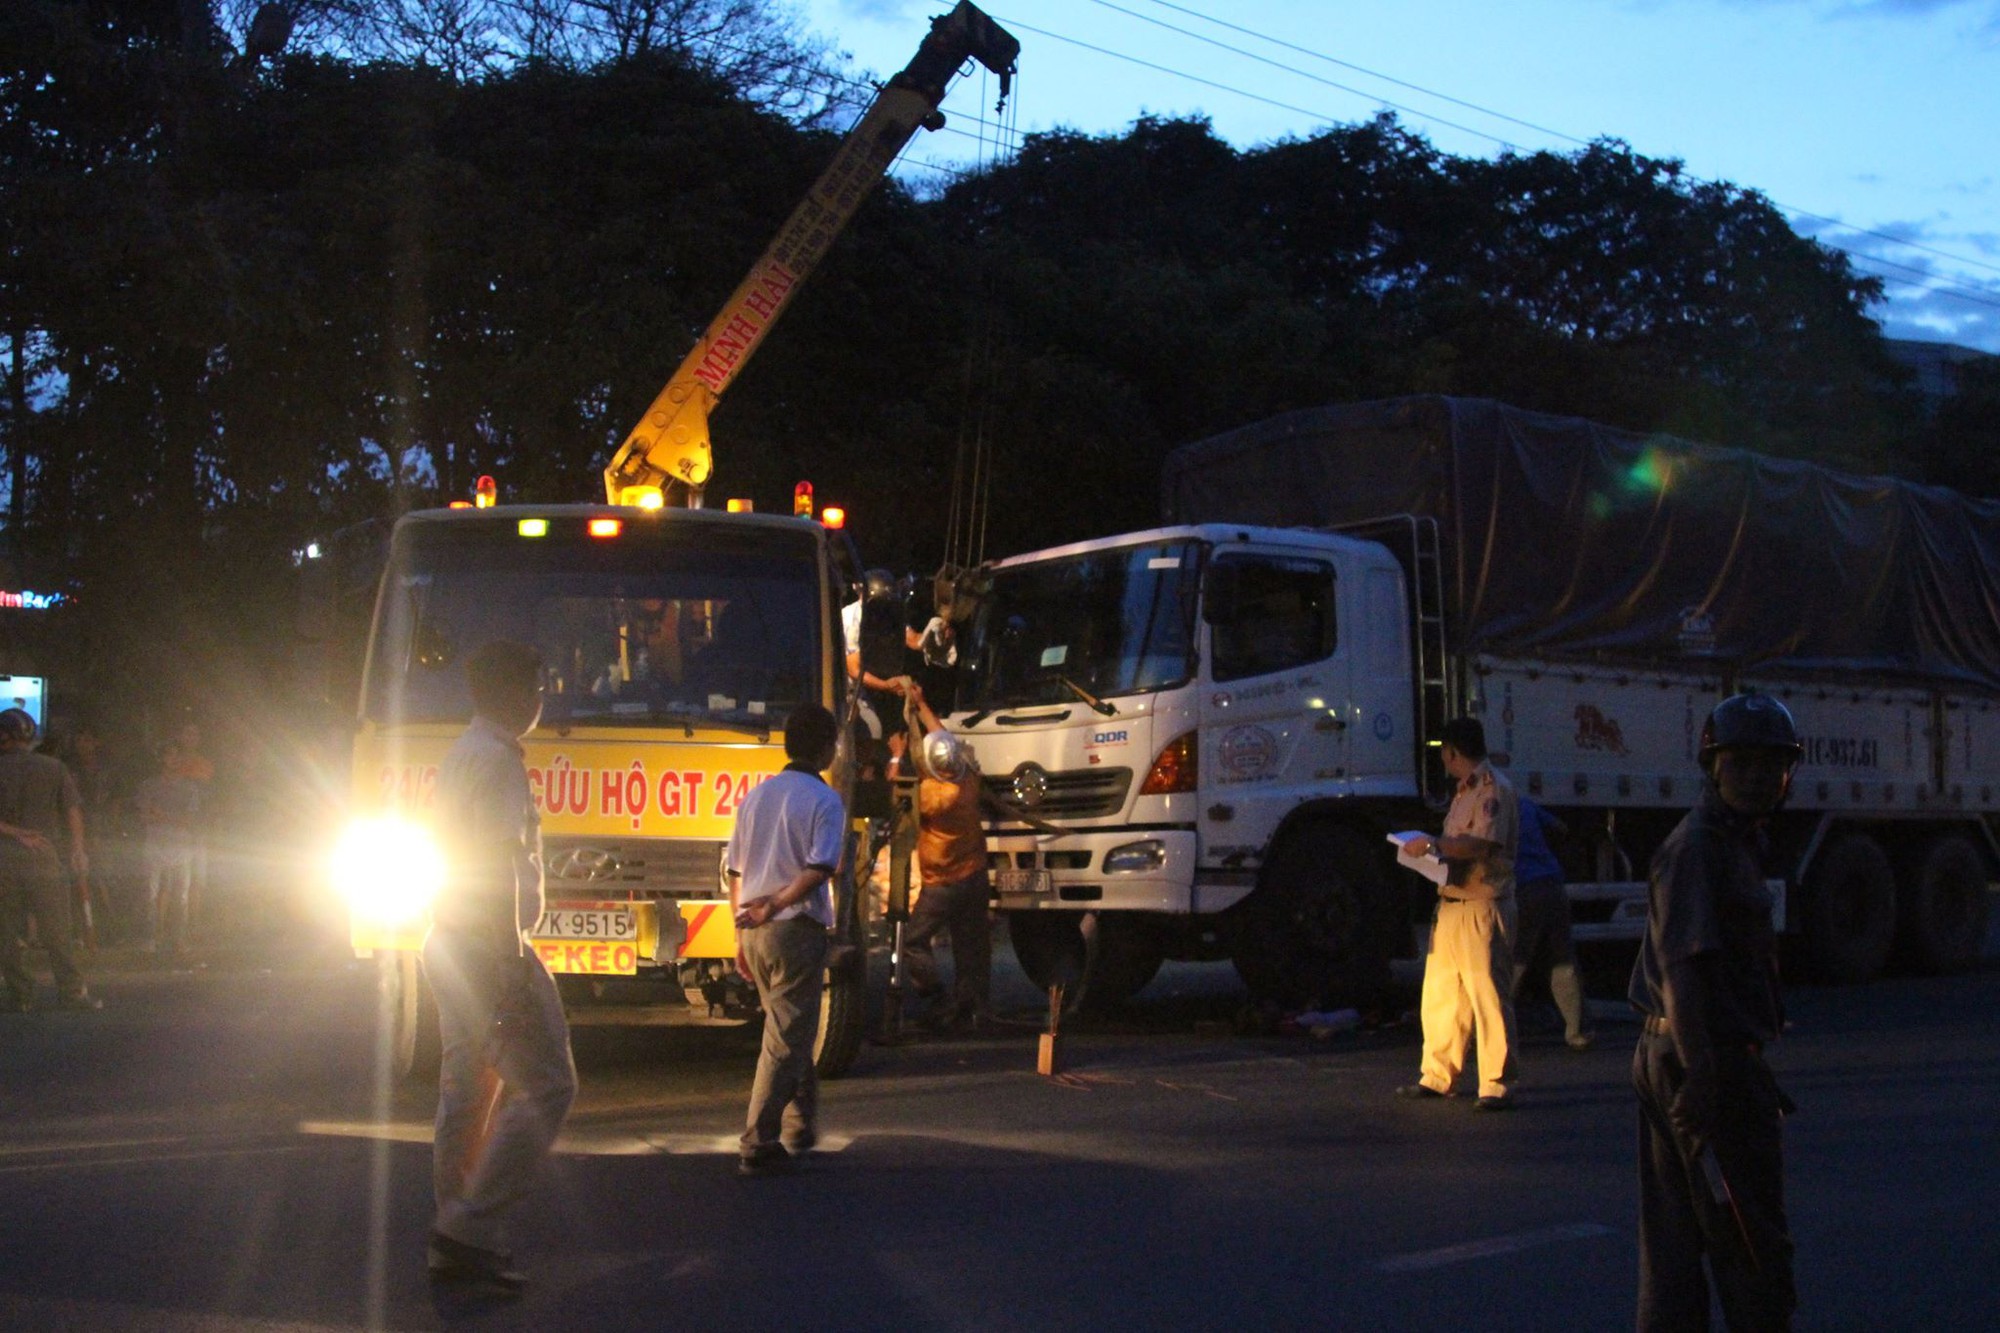 Bình Dương: Nữ công nhân bị xe tải cán tử vong thương tâm trên đường đạp xe về nhà - Ảnh 1